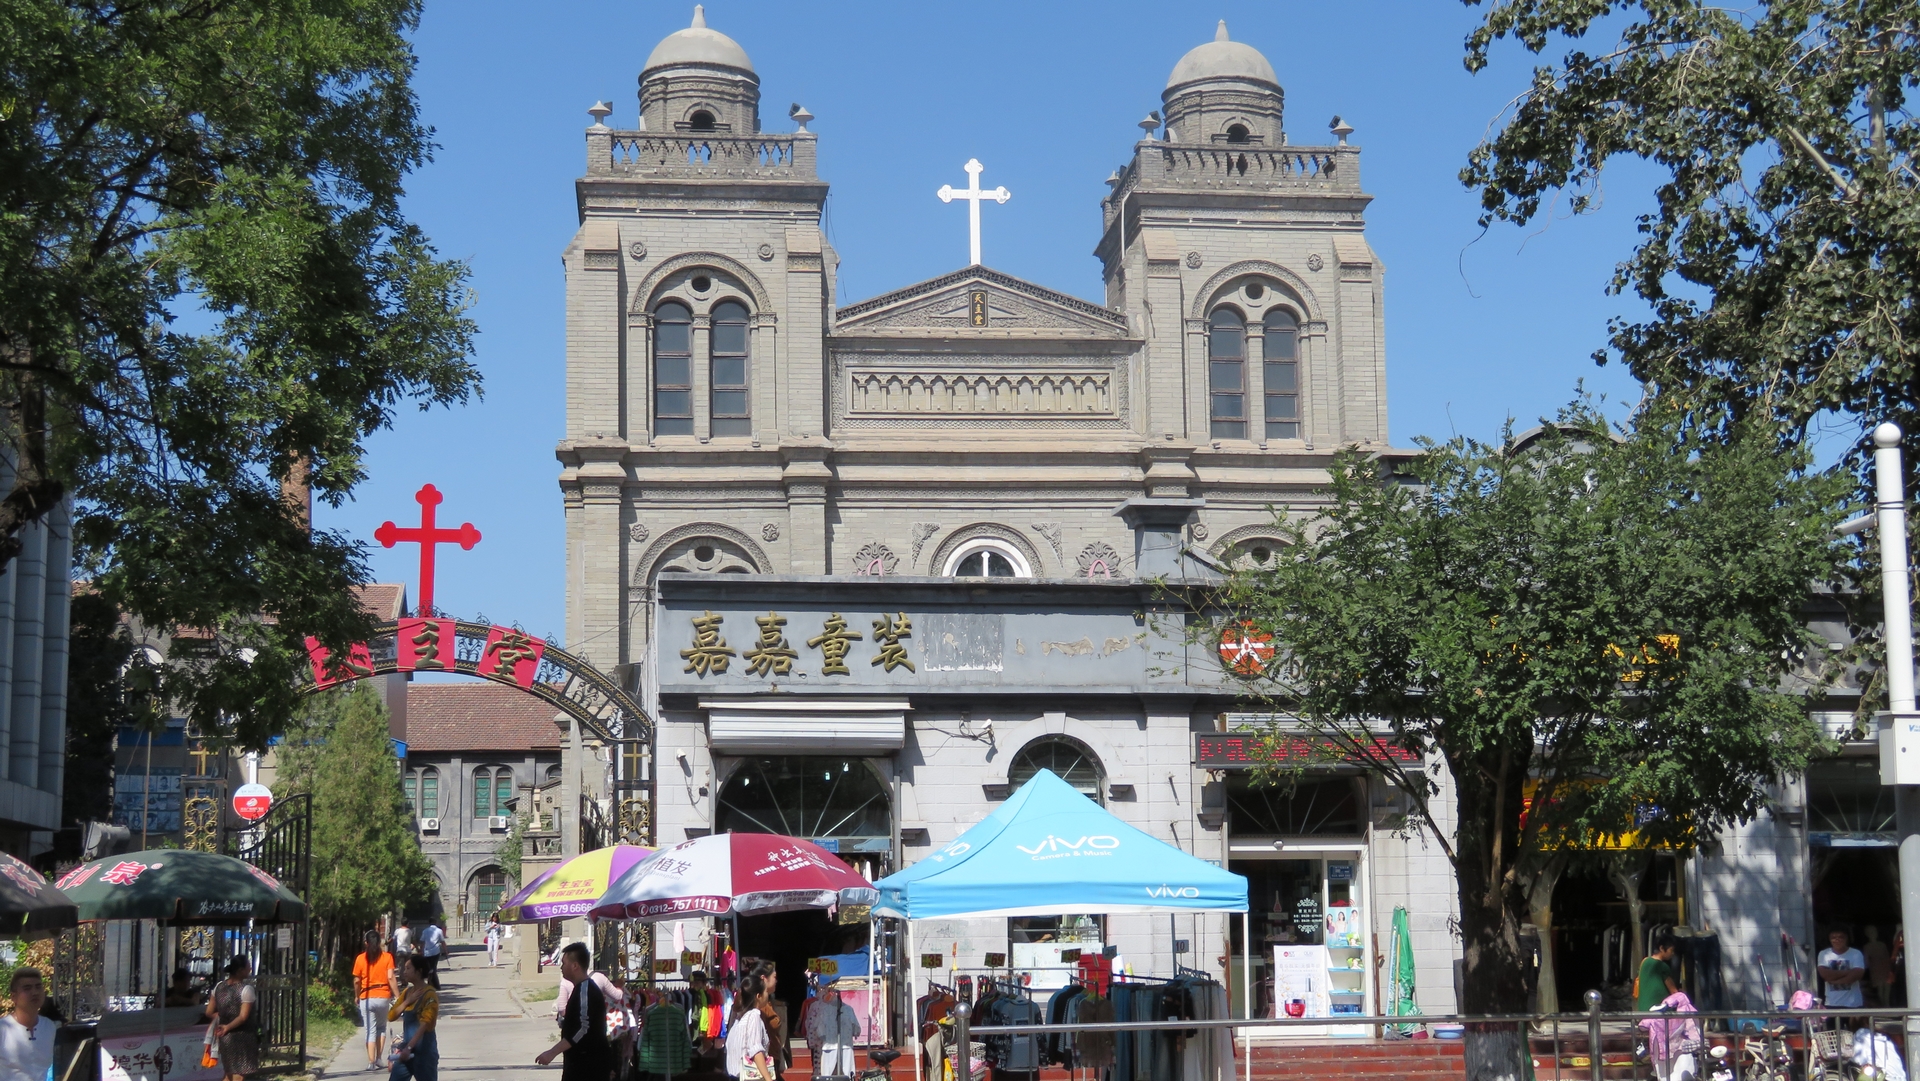 La cathédrale catholique de Baoding, dans la province chinoise du
Hebei | wikimedia commons BabelStone CC BY-SA 3.0